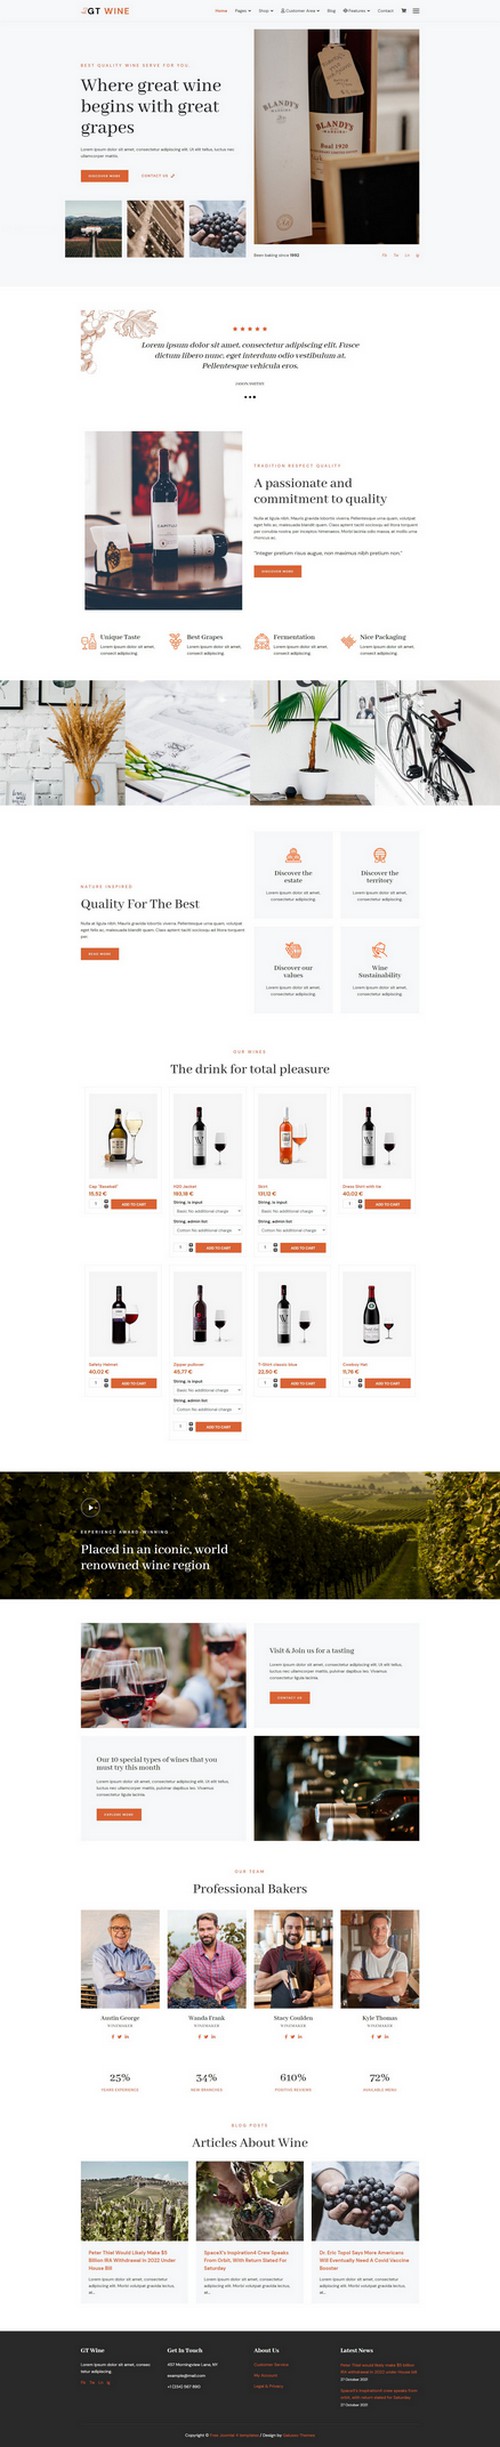 GT Wine - Responsive Wine Shop Joomla 4 Template